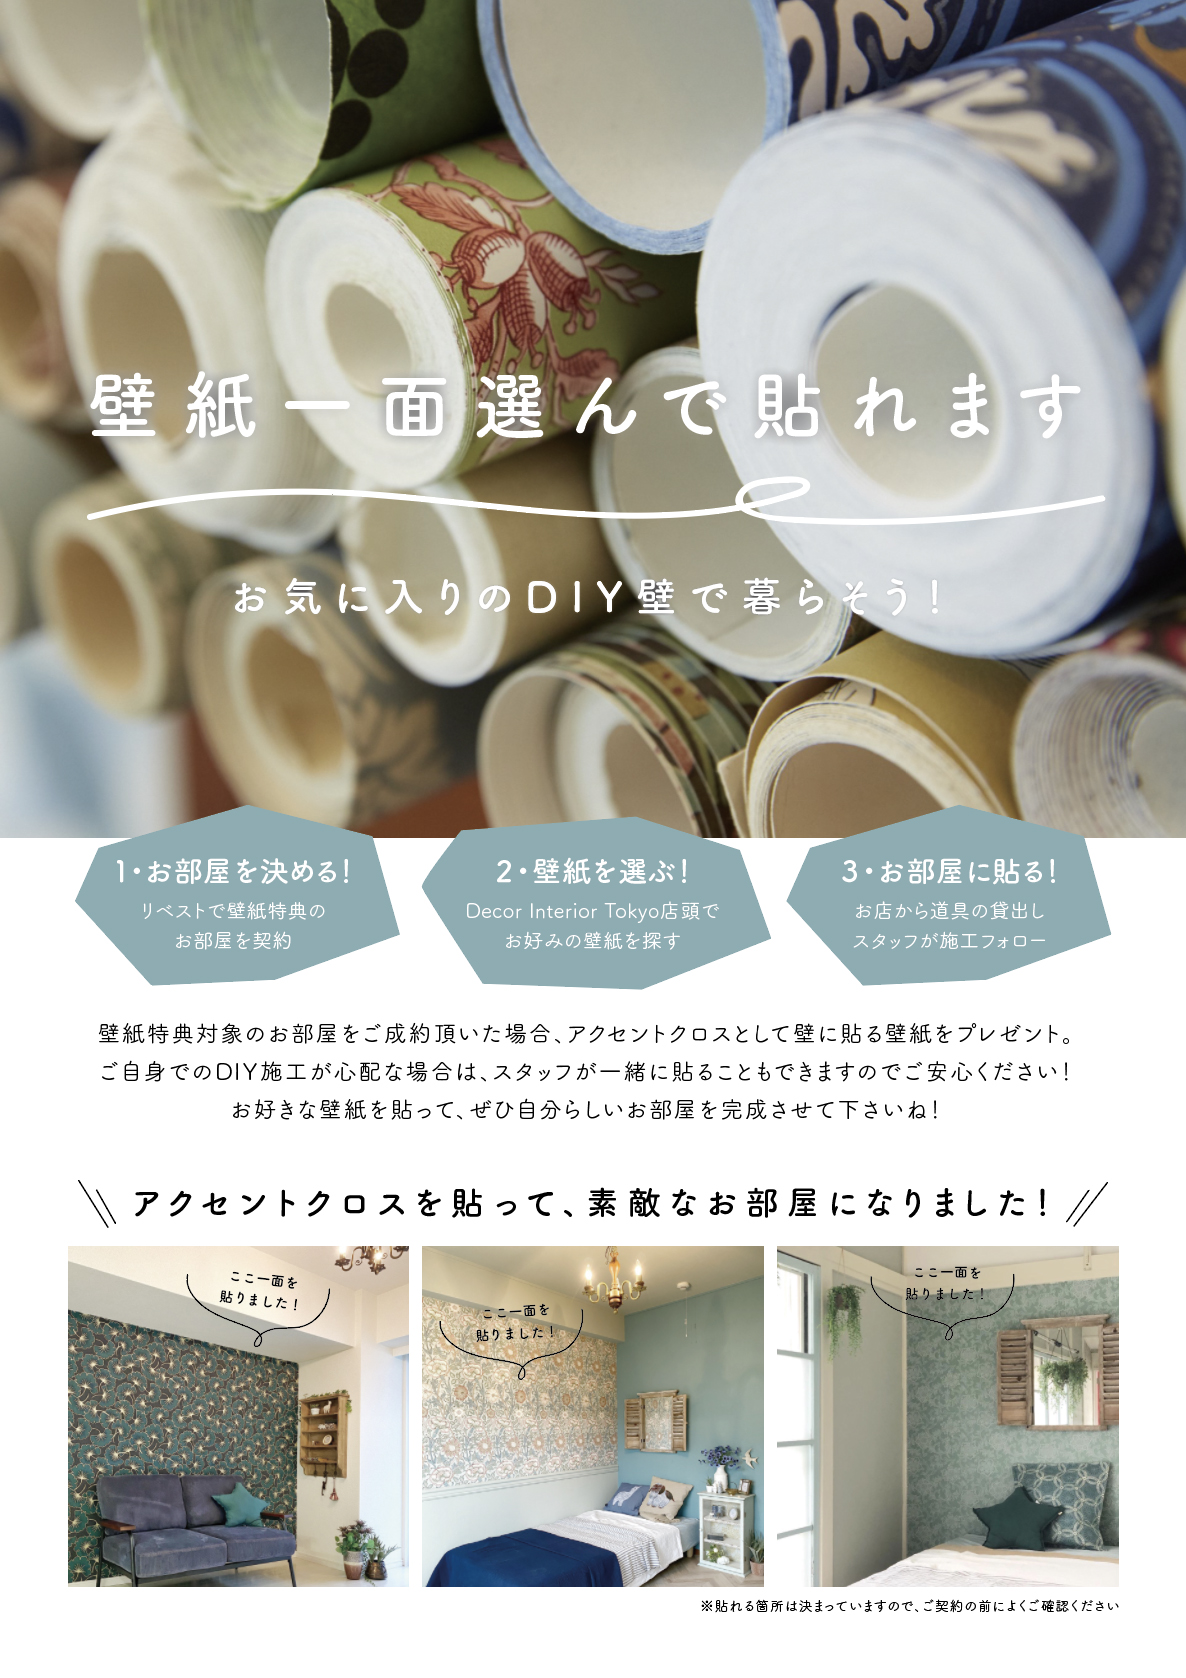 【Decor Interior Tokyo】吉祥寺でDIY可能物件に住みませんか？ー当店がプロデュースするDIYのモデルルームも公開中！